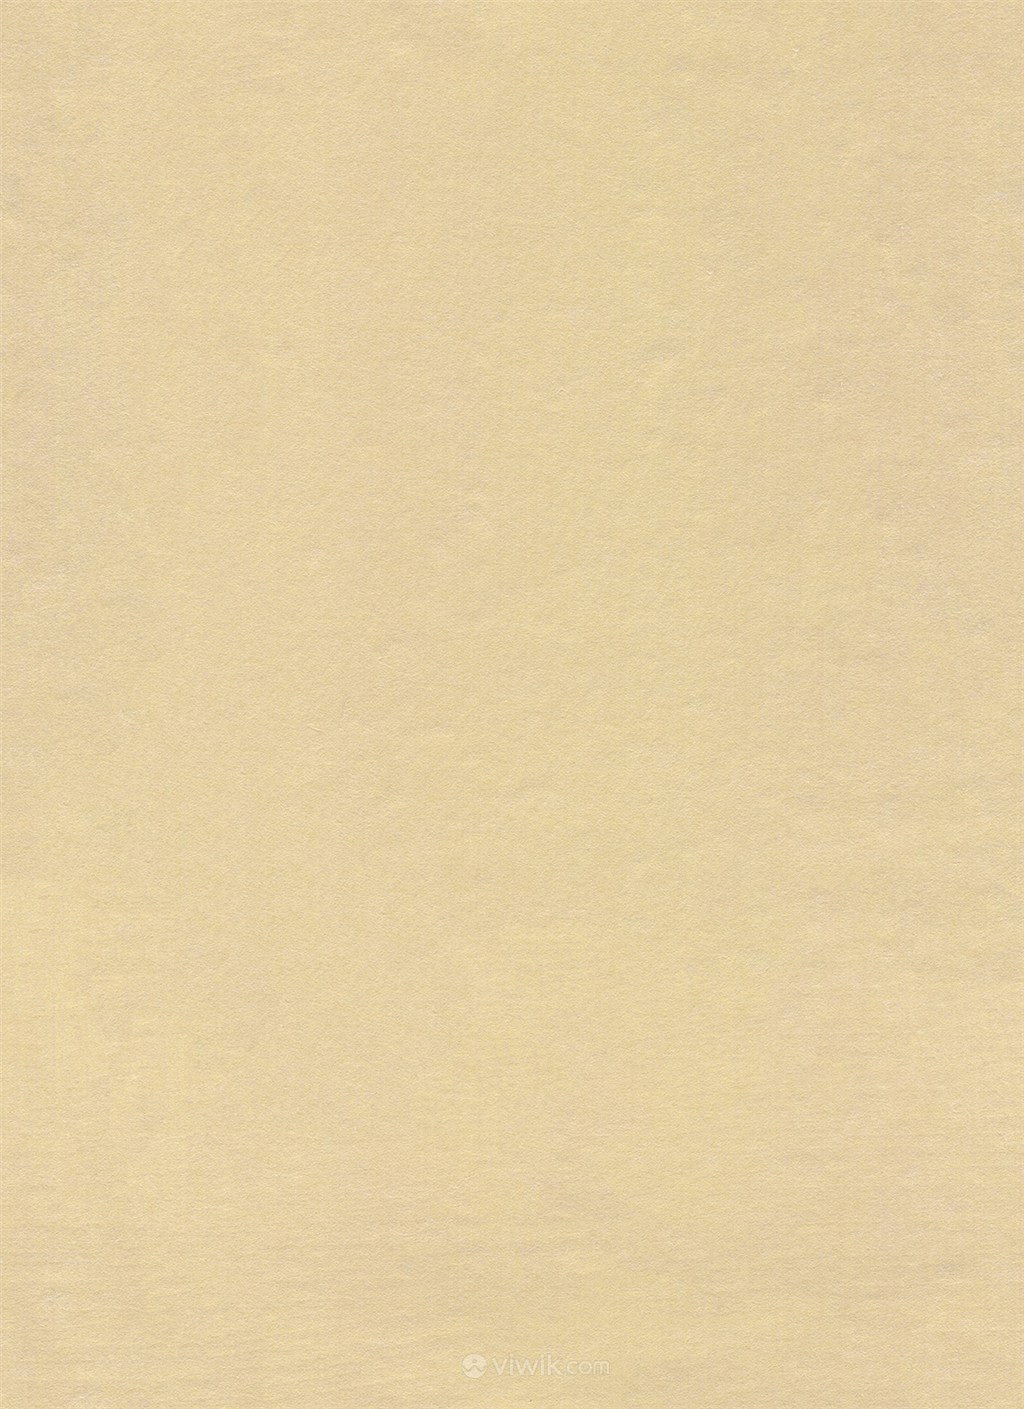 中土黄色古典纸纹背景图片